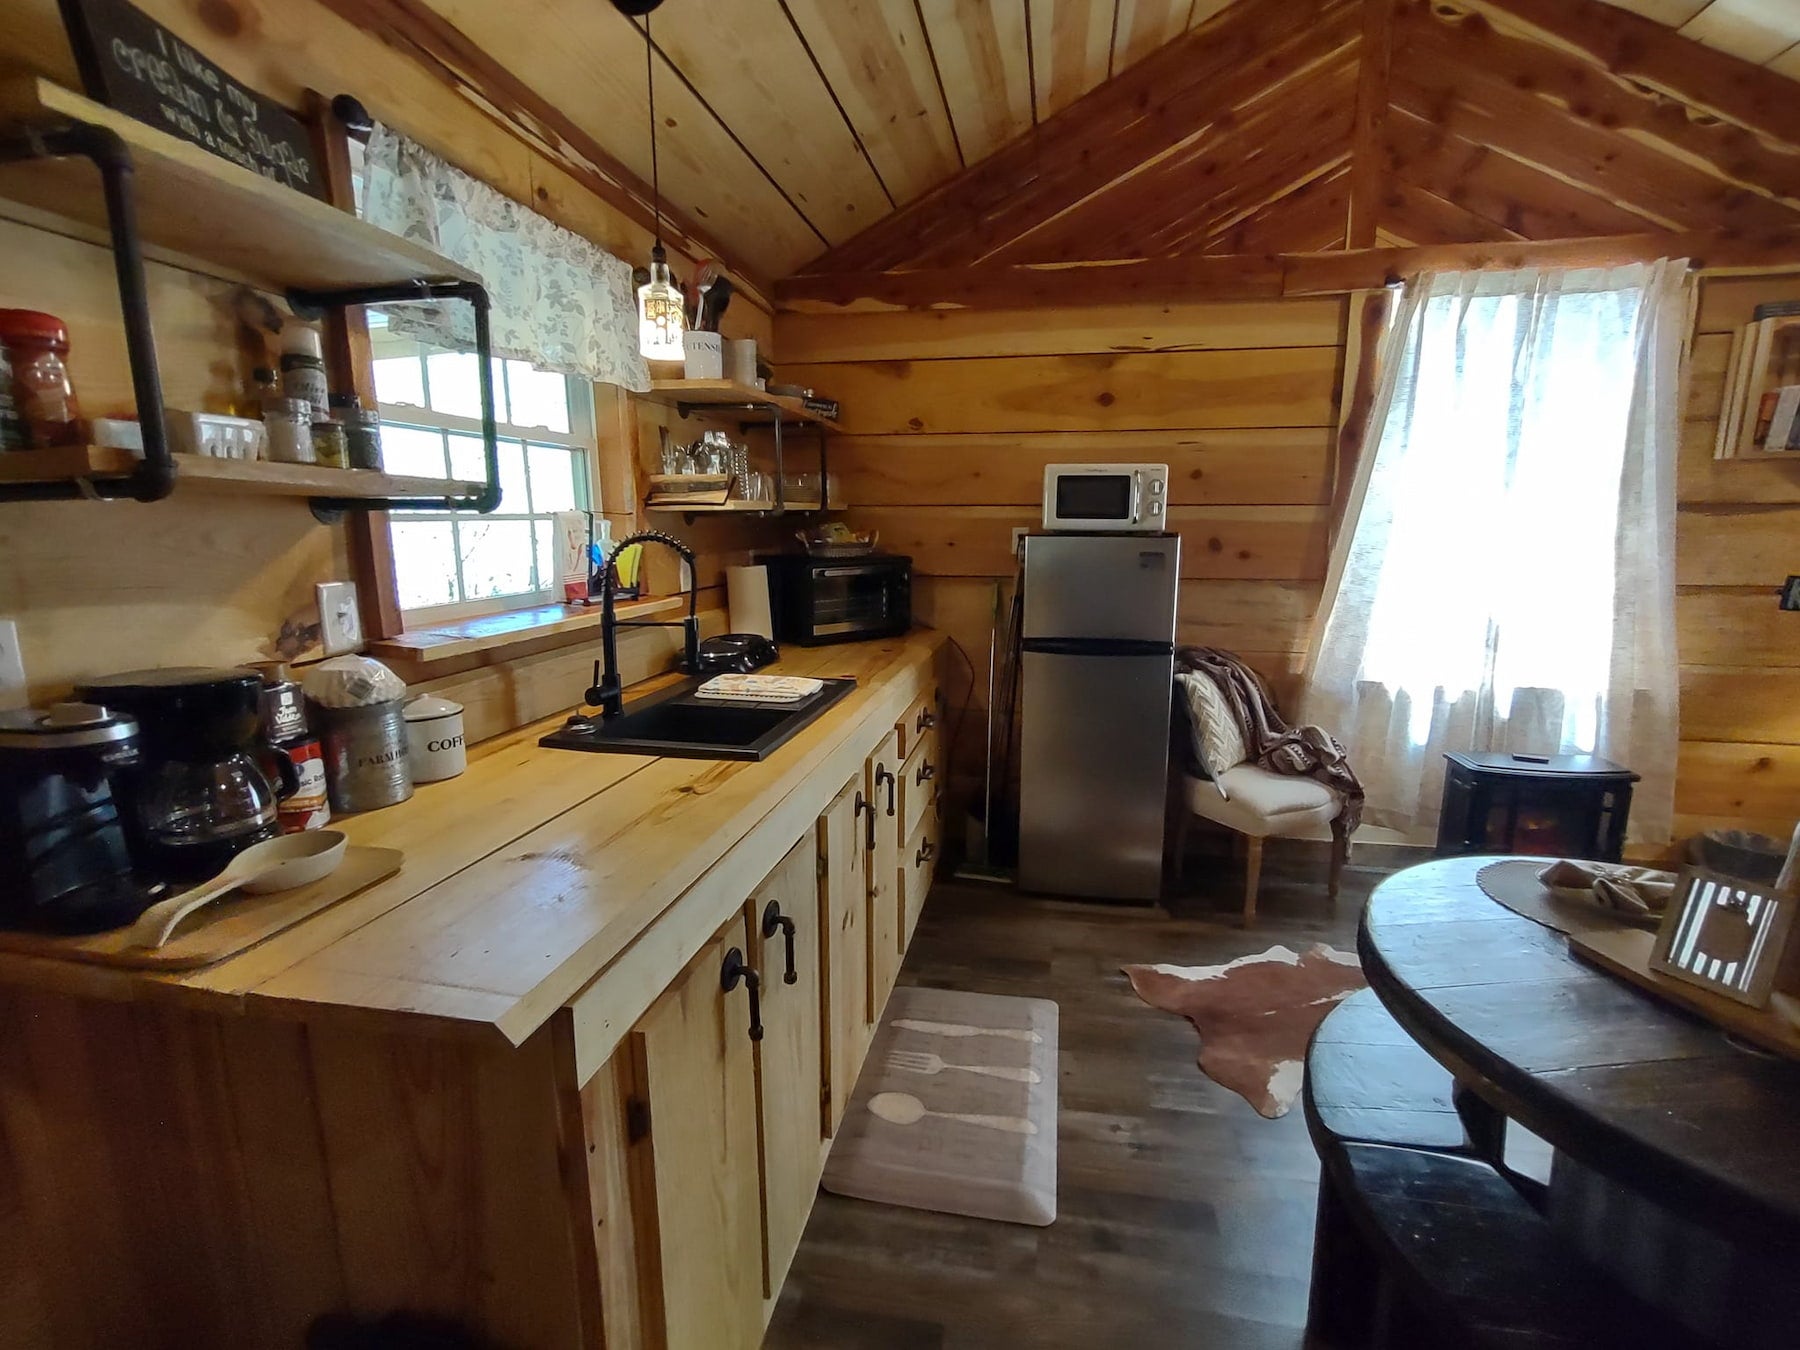 Interior of wooden glamping cabin in Arkansas.